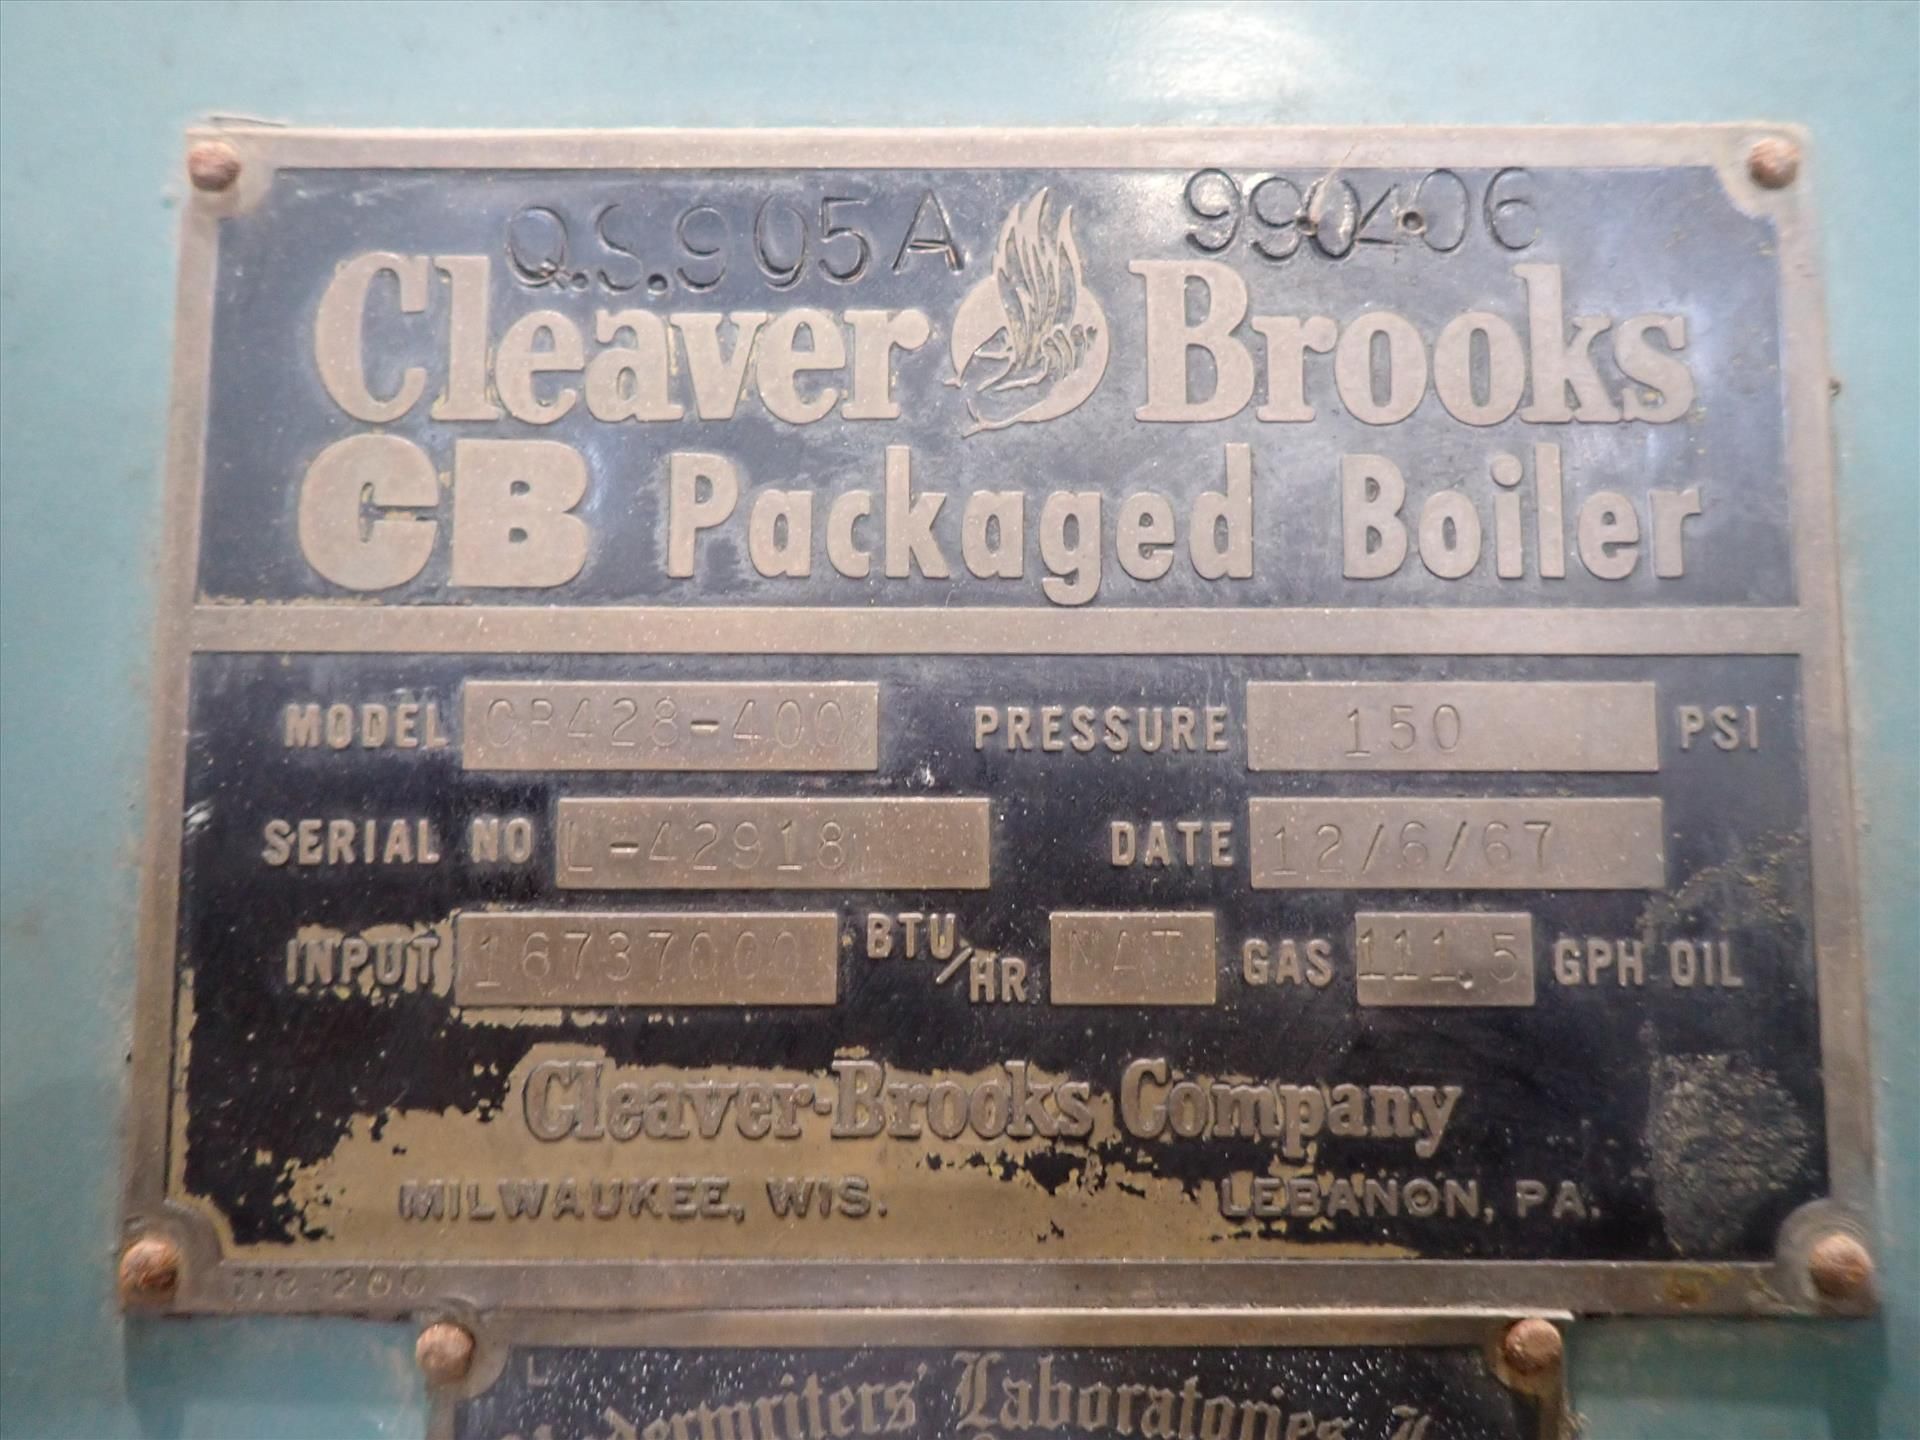 Cleaver Brooks Boiler, mod. CB428-400, ser. no. L-42918 - Image 5 of 9